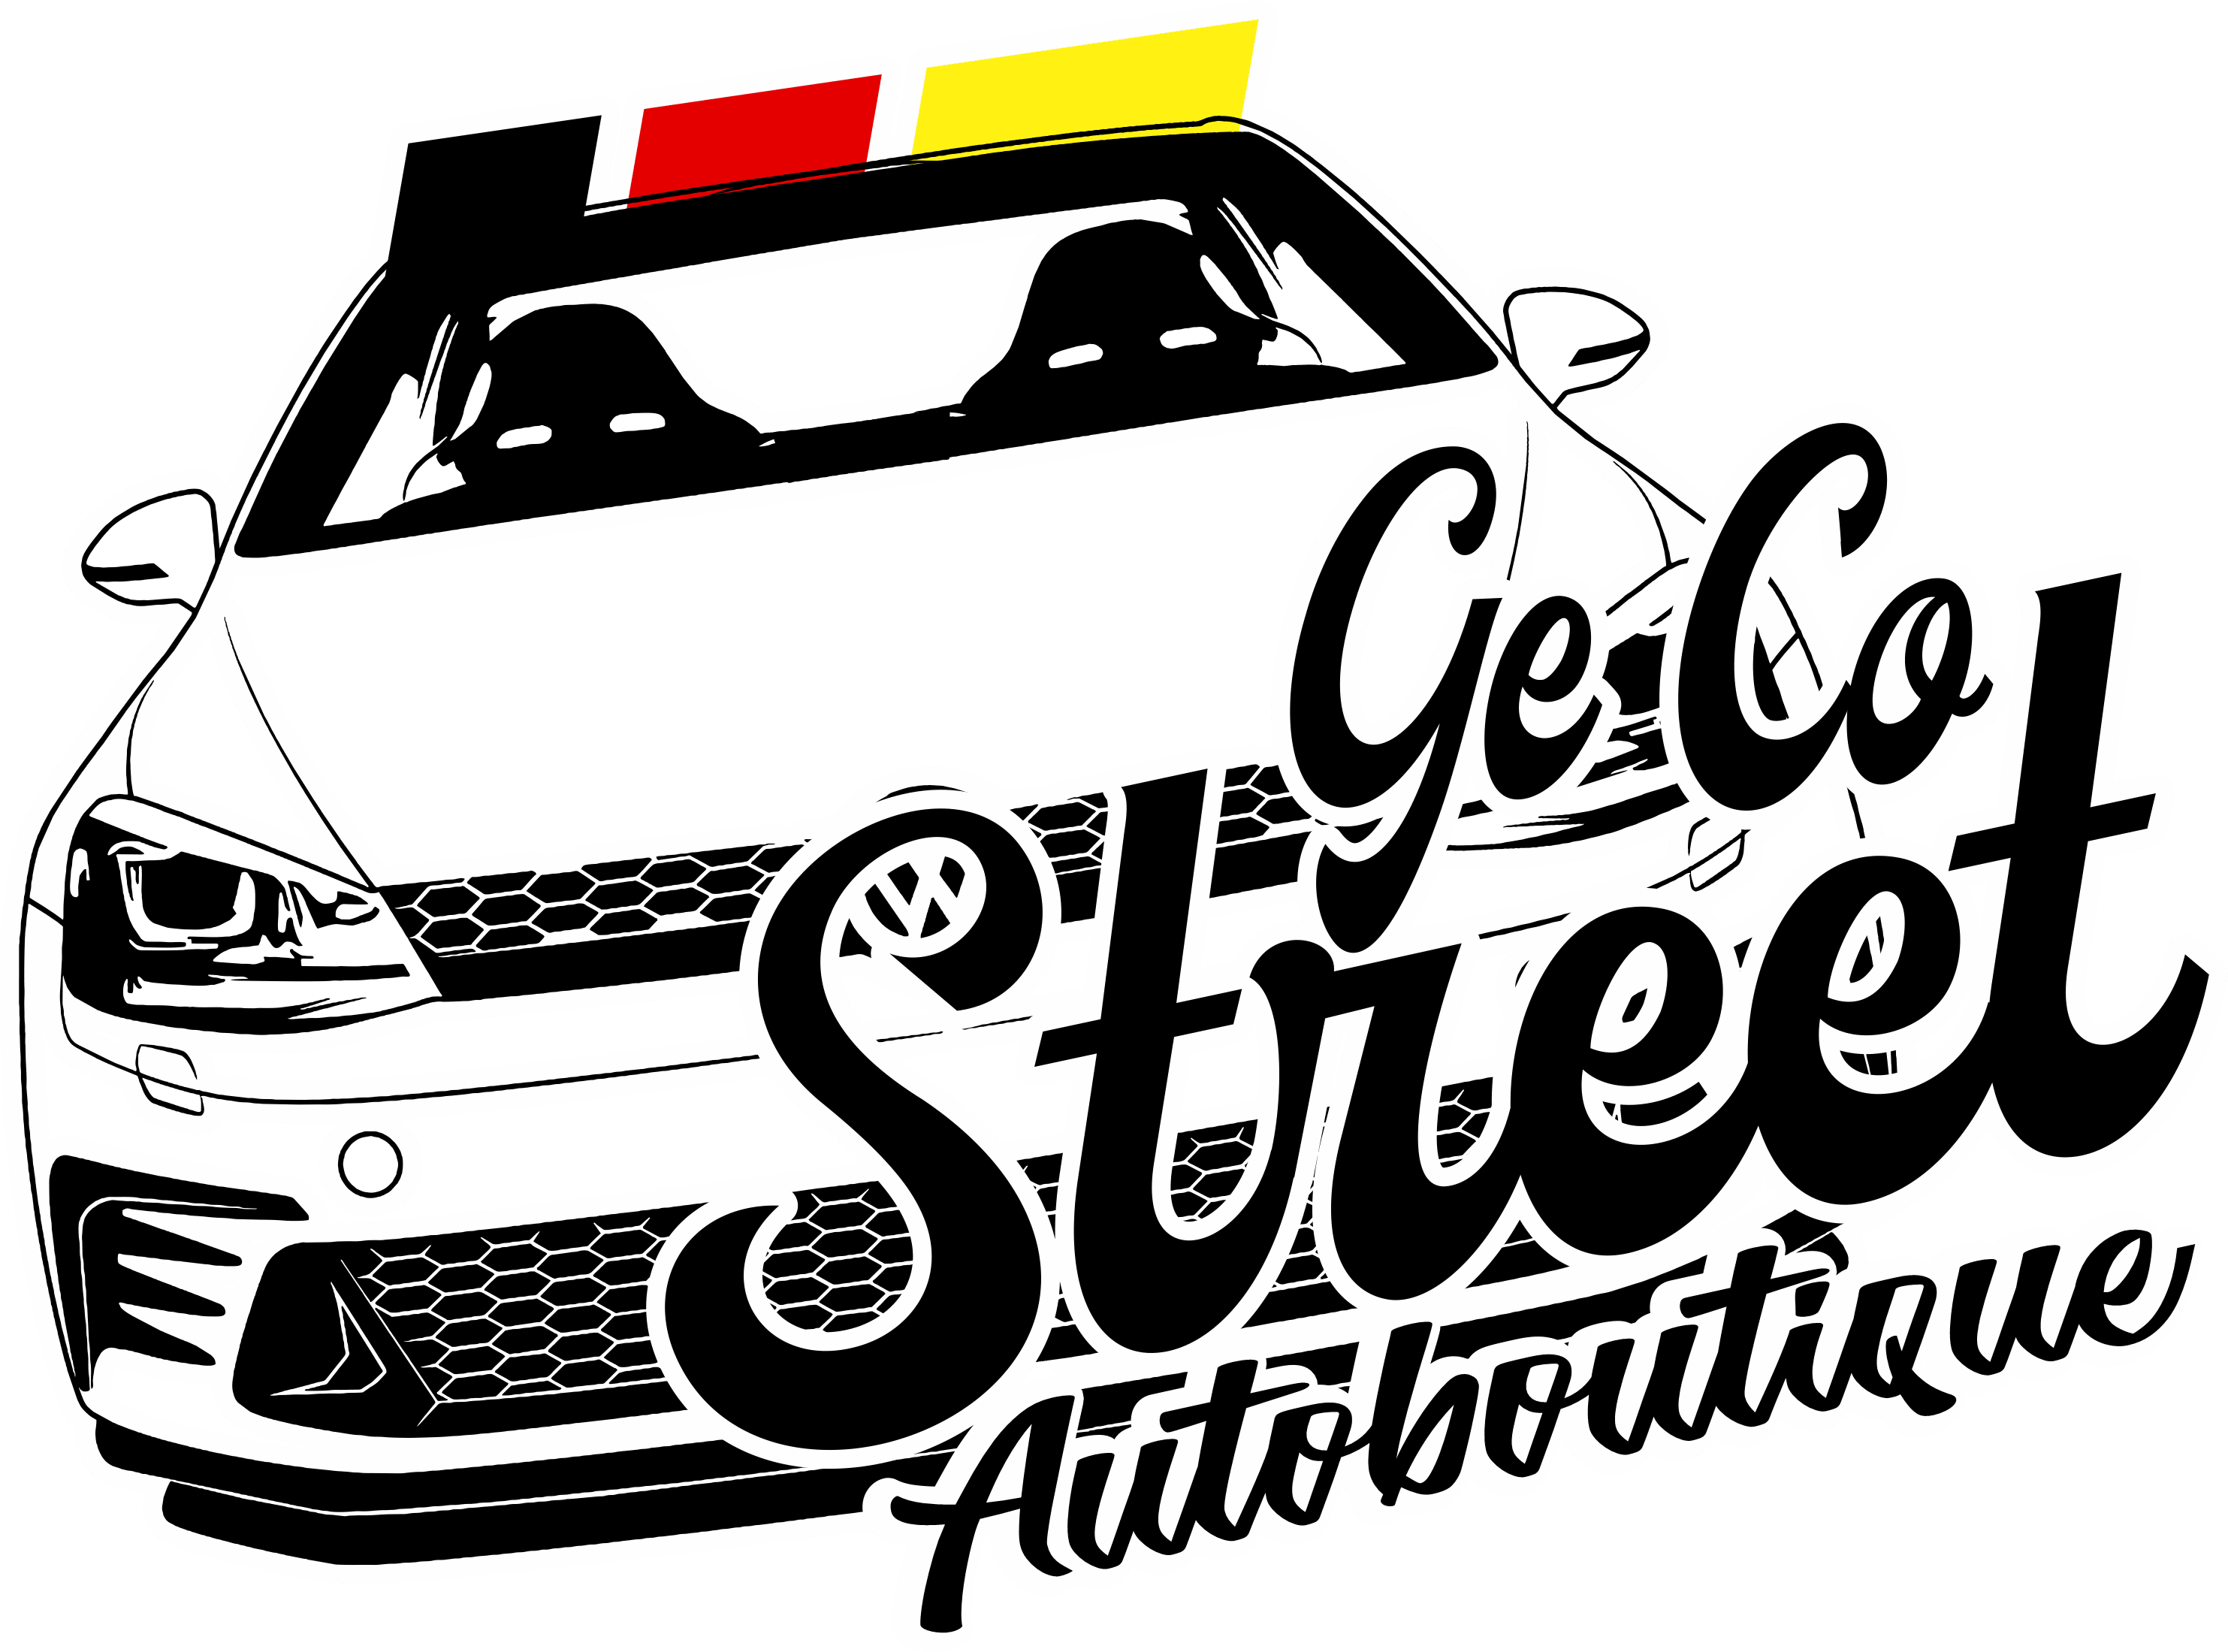 Ge-Co Street Autoboutique